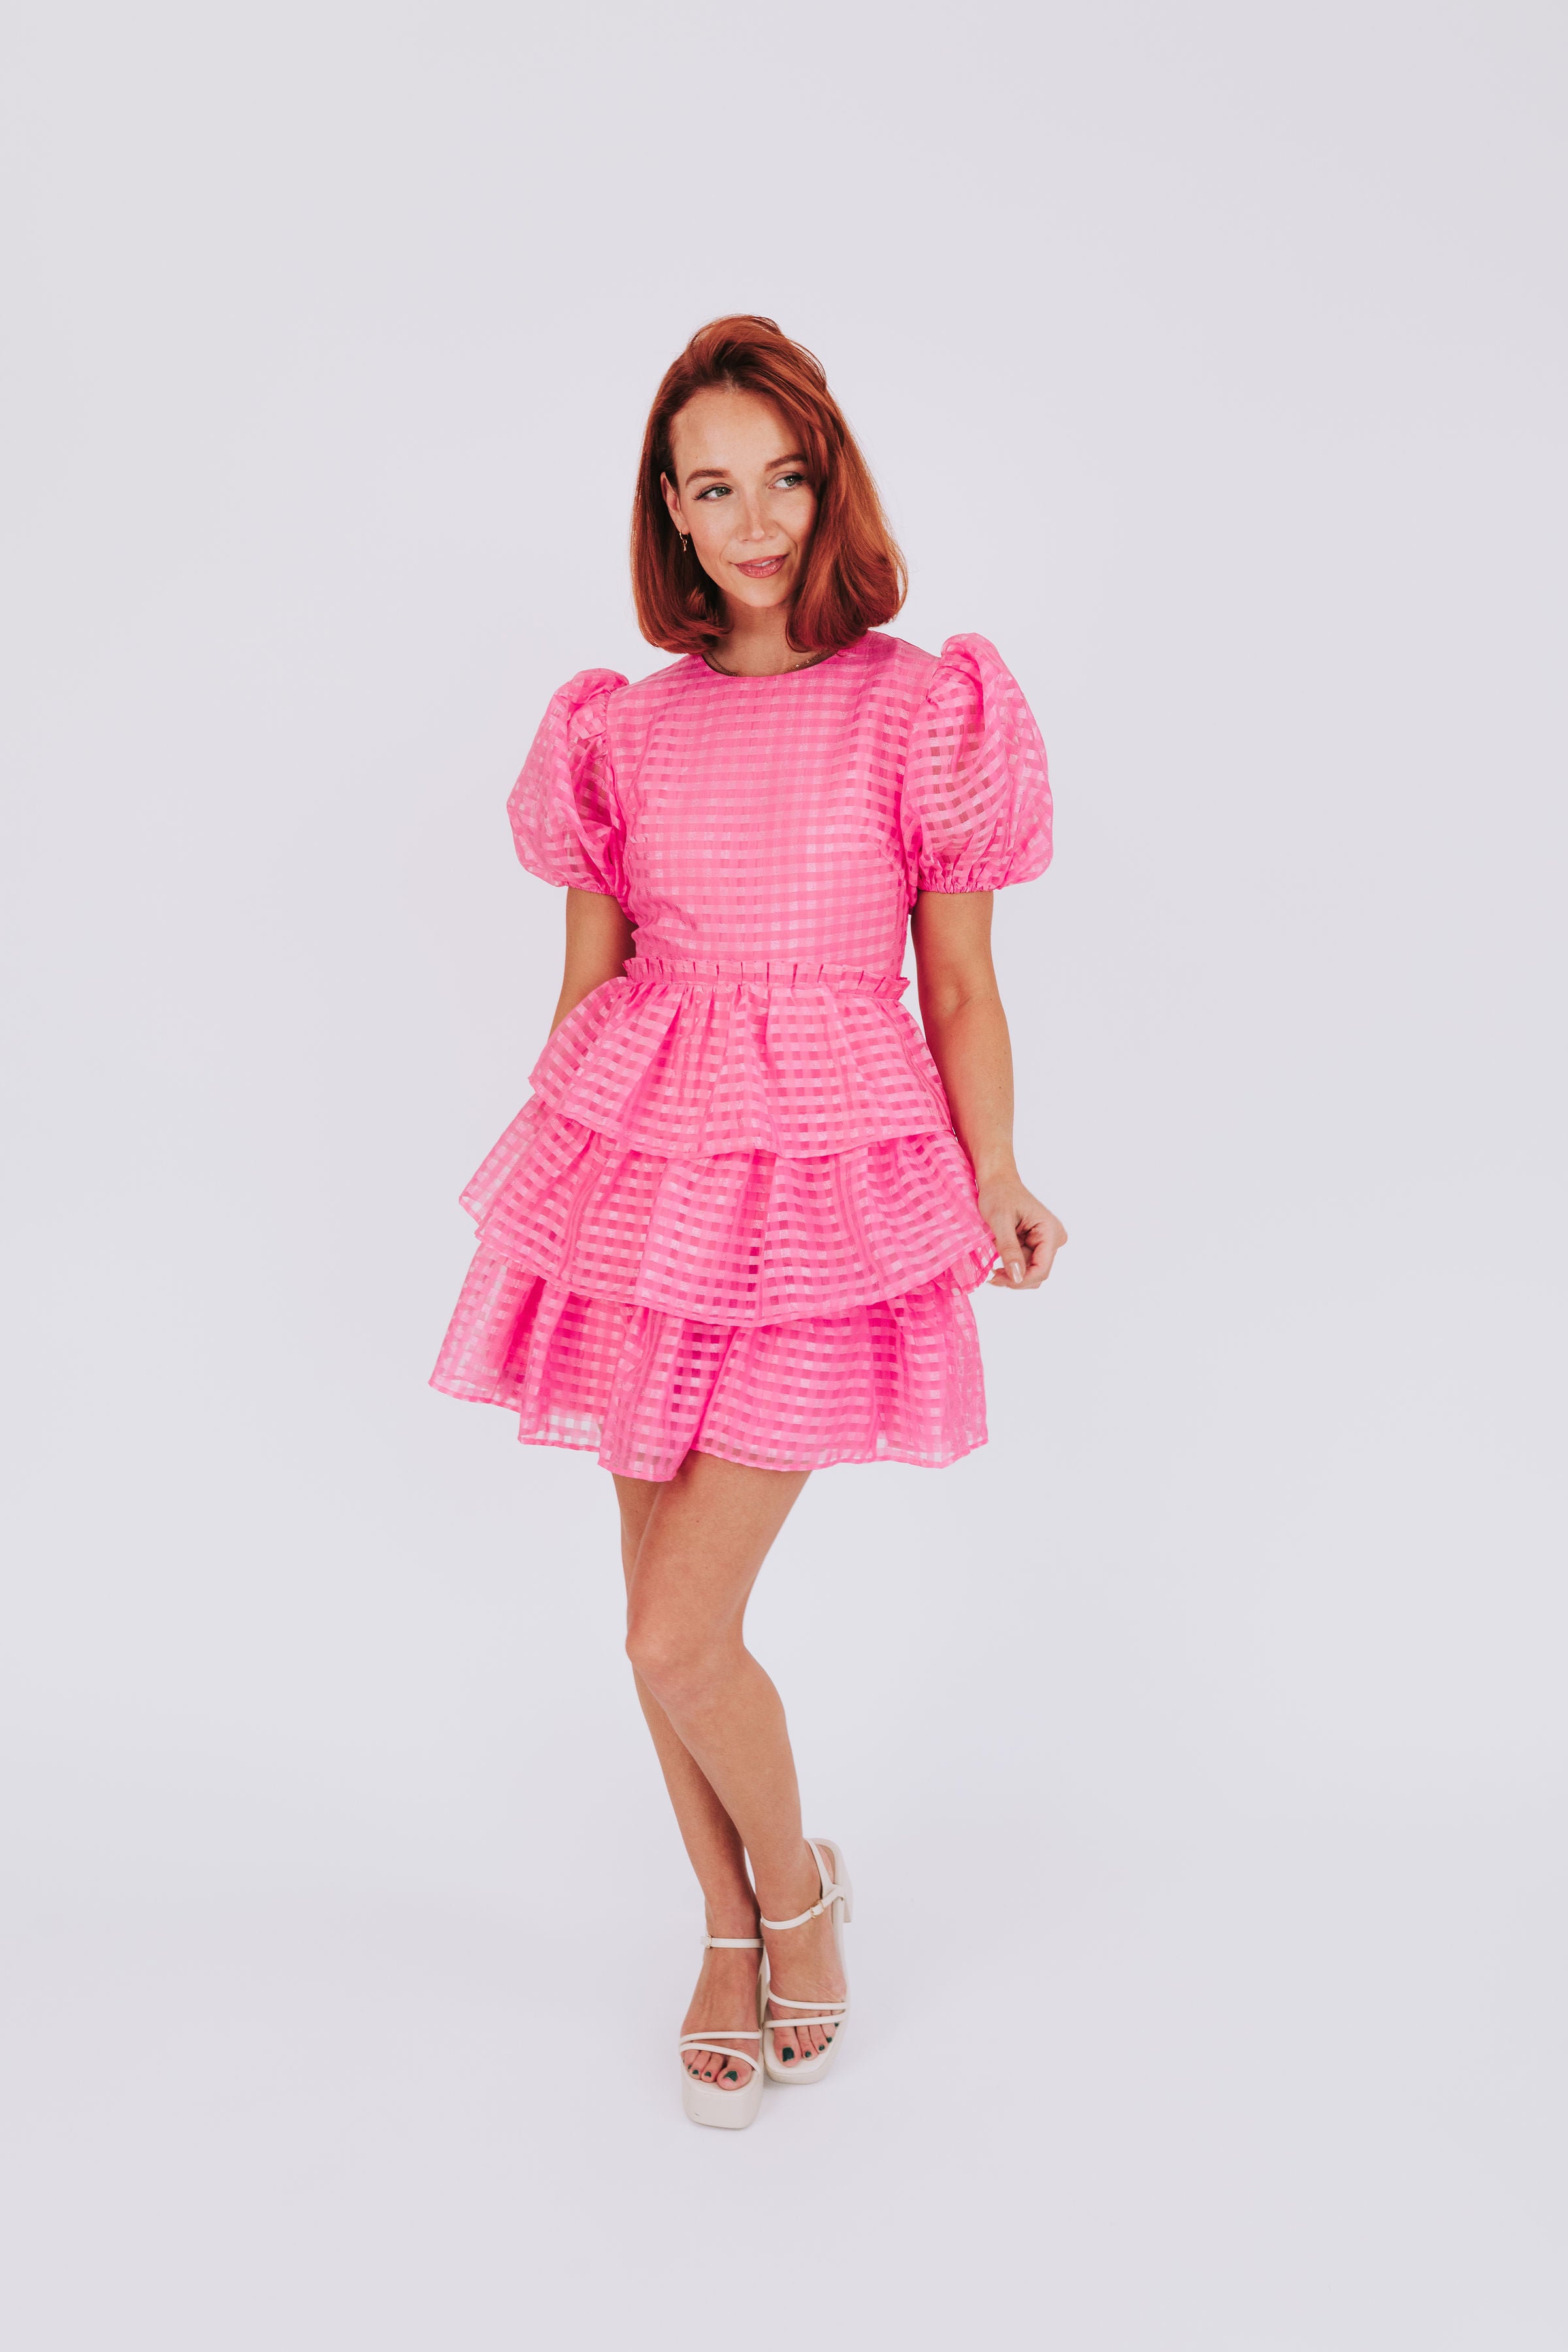 Pinky Swear Dress